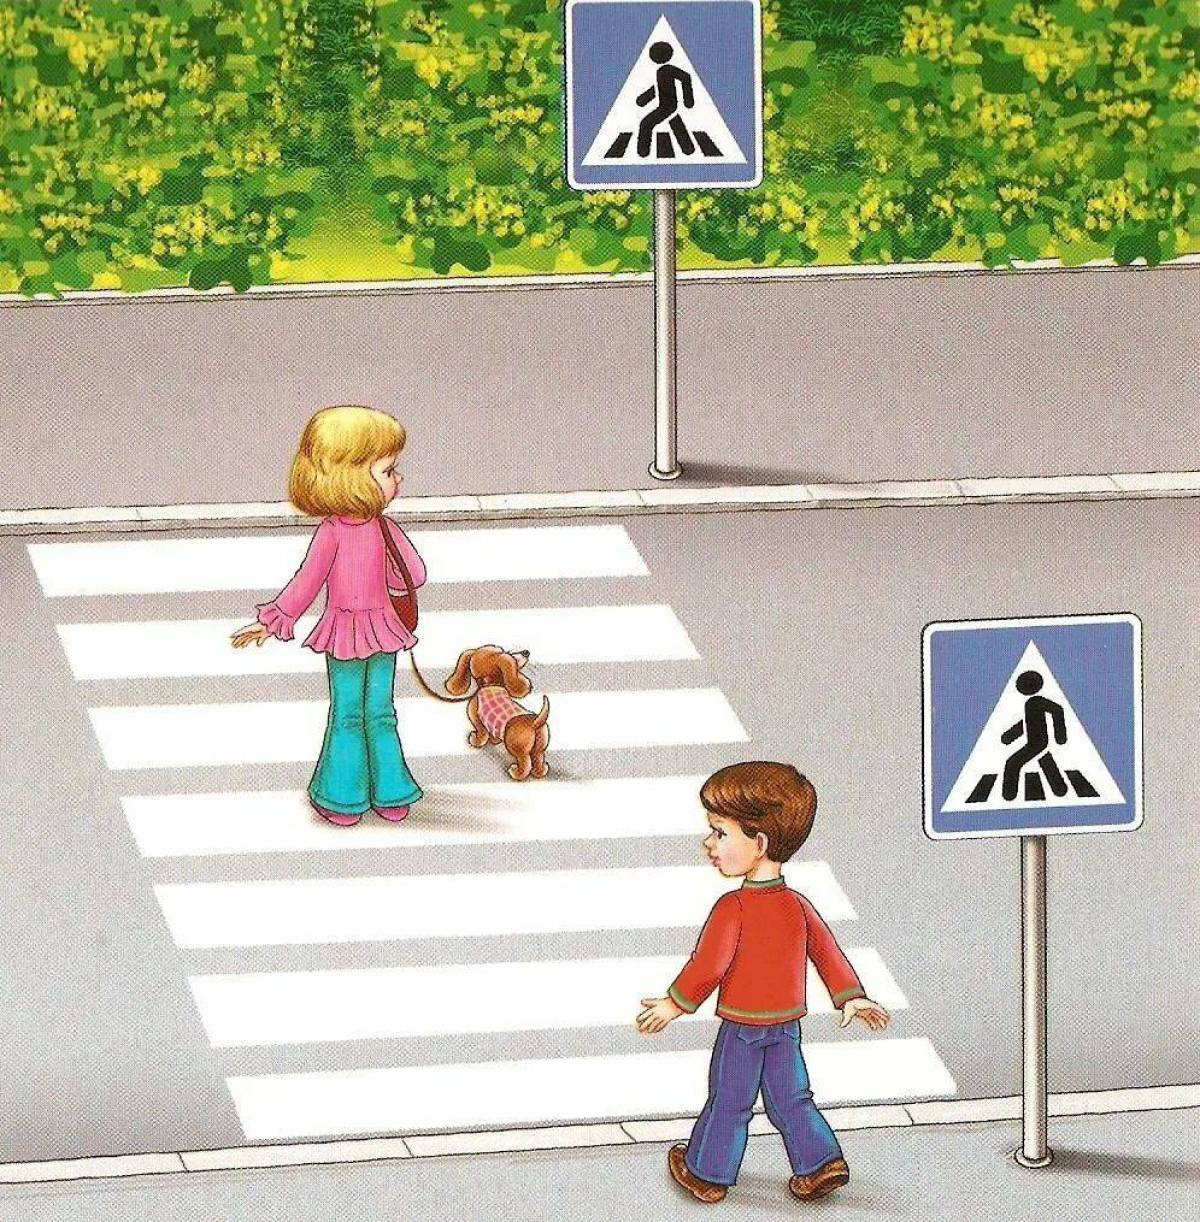 Безопасность дорожного пешехода. Пешеходный переход для детей. Пешеходный переход картинка для детей. Дети пешеходы. Картина пешеходный переход для детей.